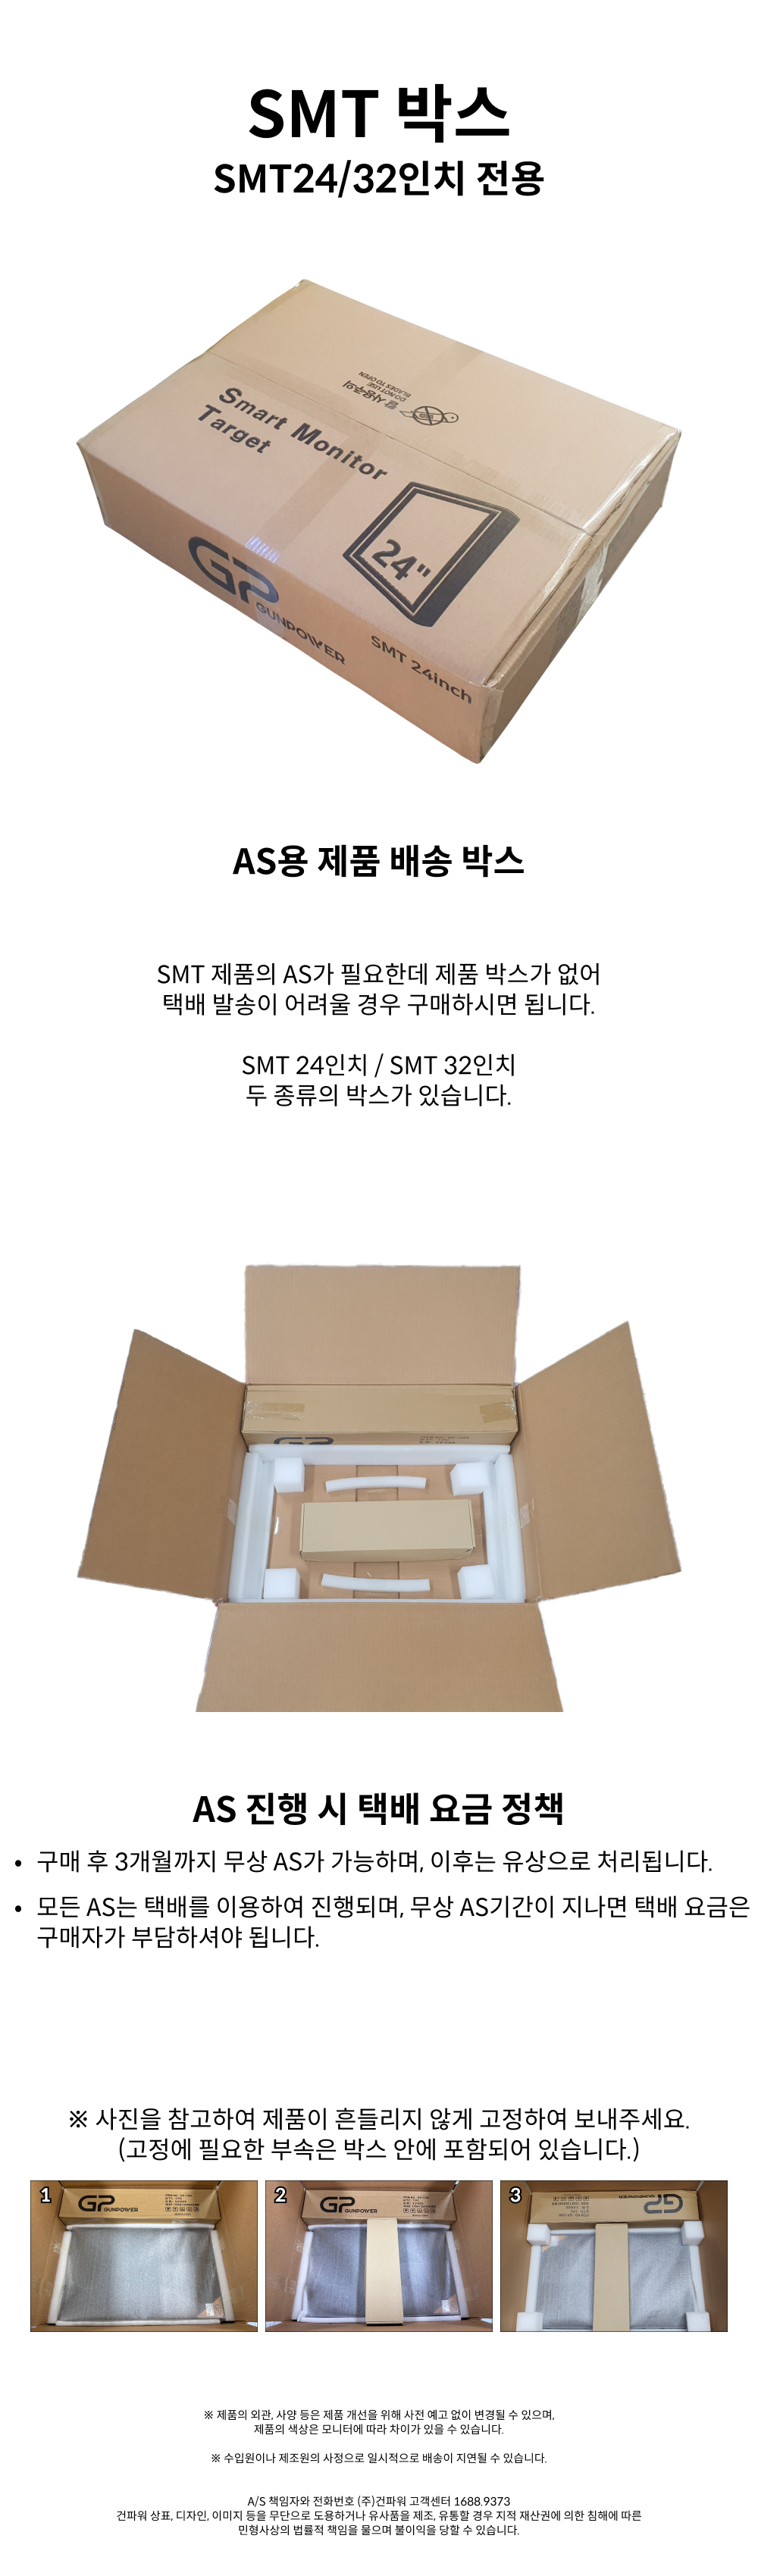 Package box for SMT(Kor).jpg